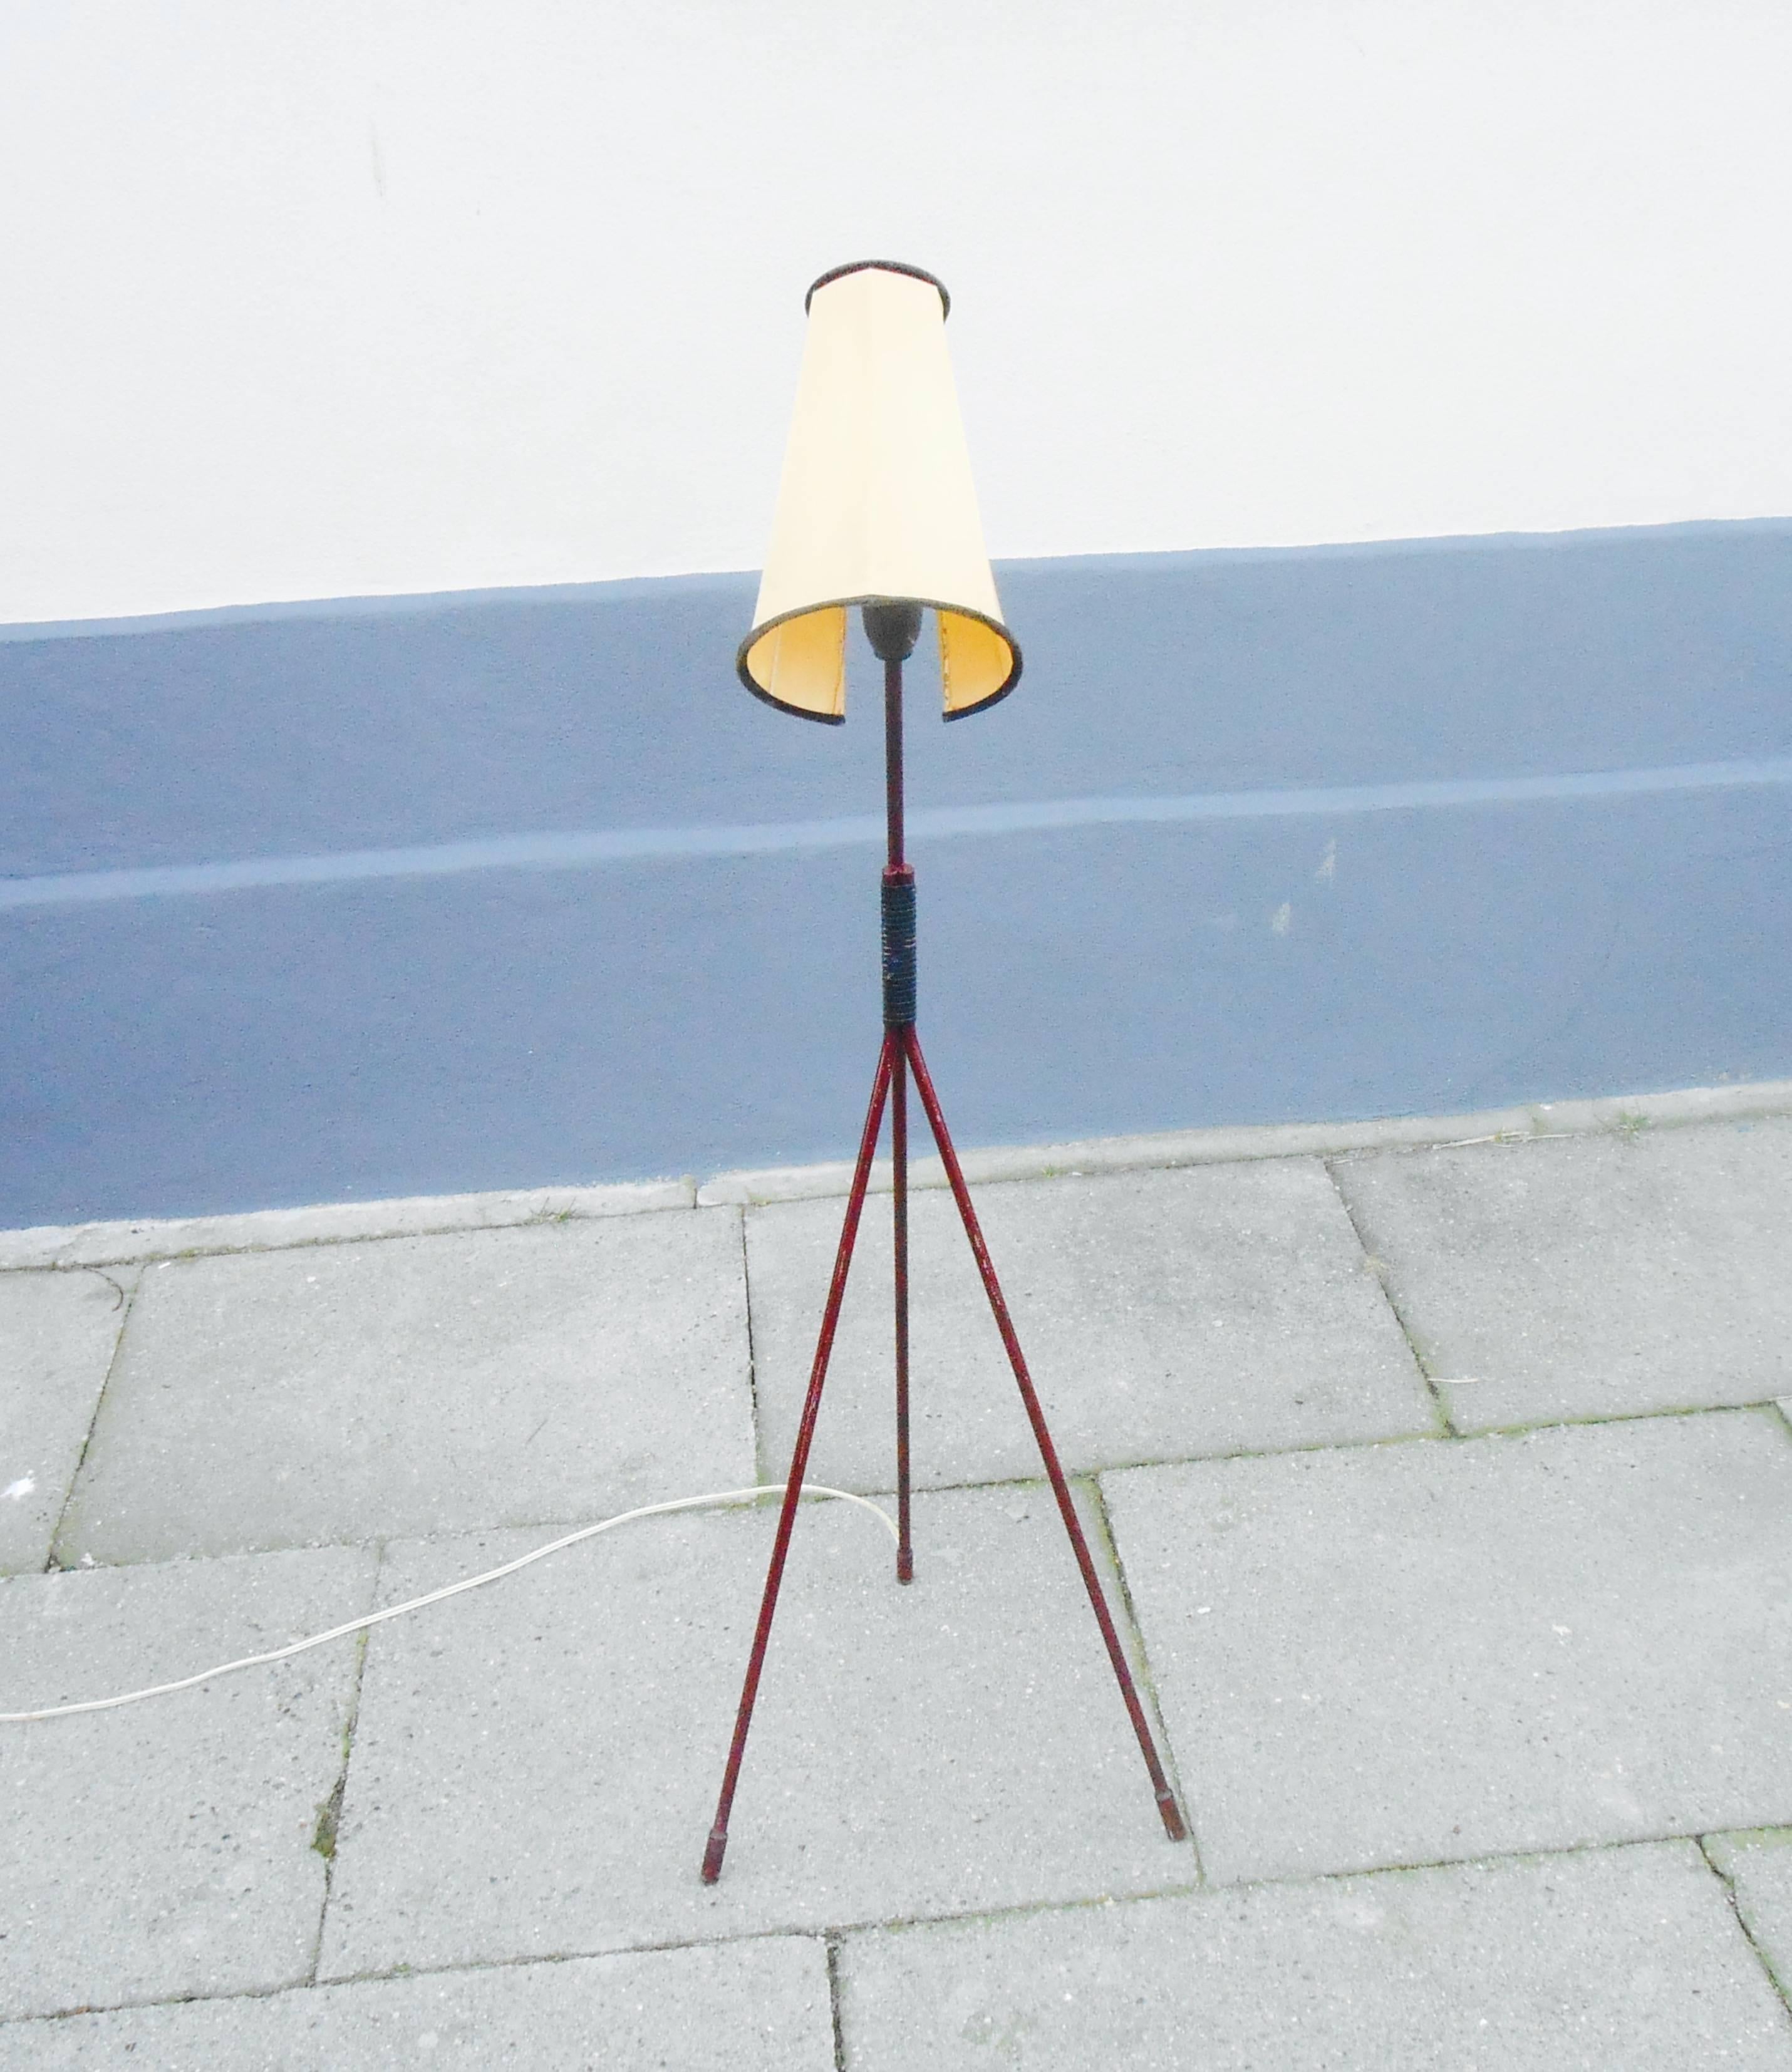 Mid-20th Century 1950s Modernist Tripod Floor Lamp 'Giraffe' by Hans Bergstrom, Sweden 1950s